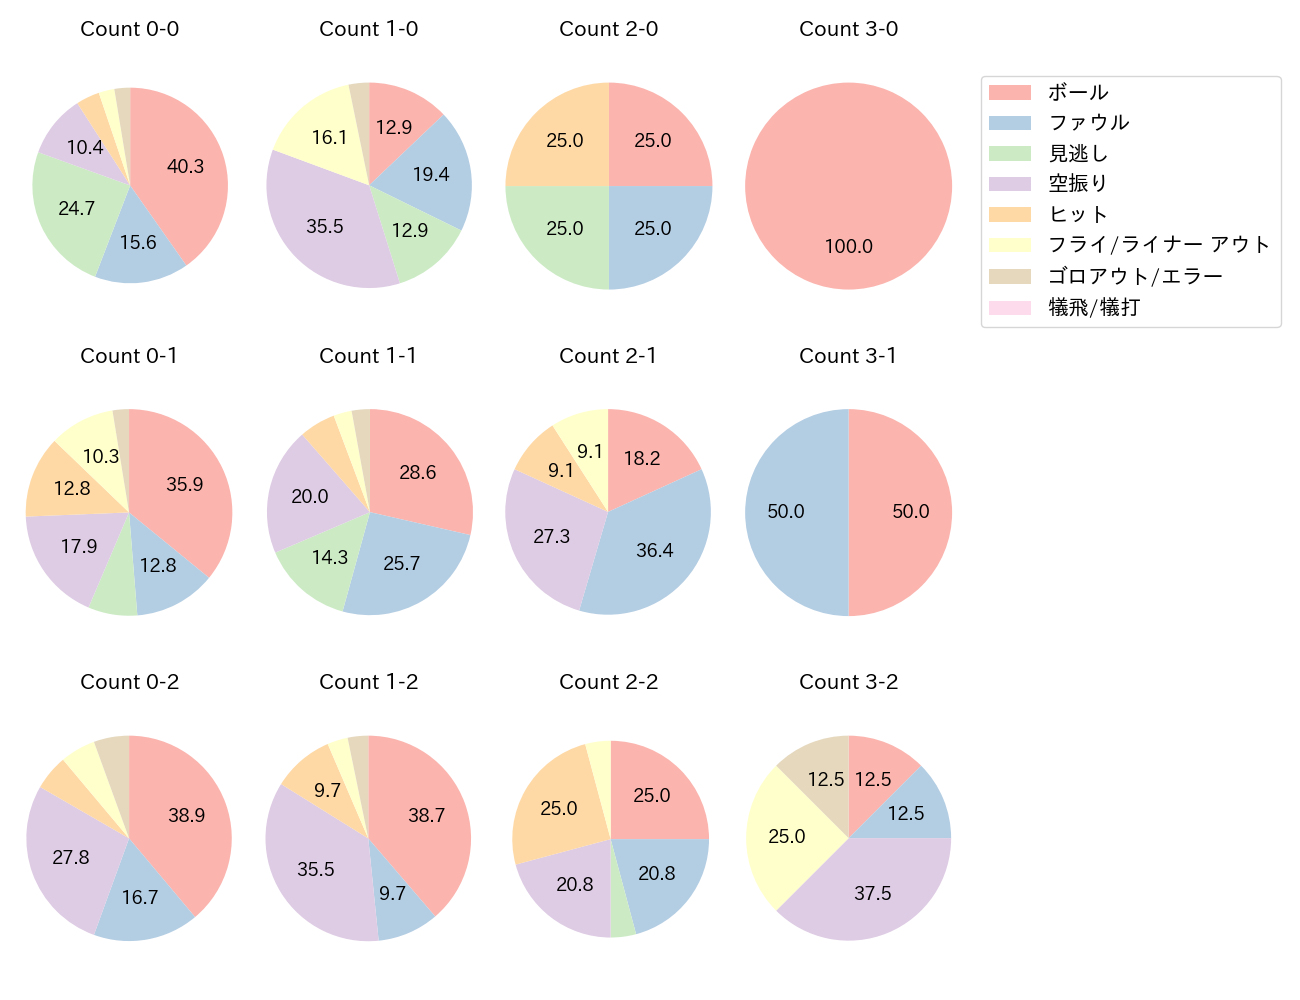 佐藤 輝明の球数分布(2021年5月)